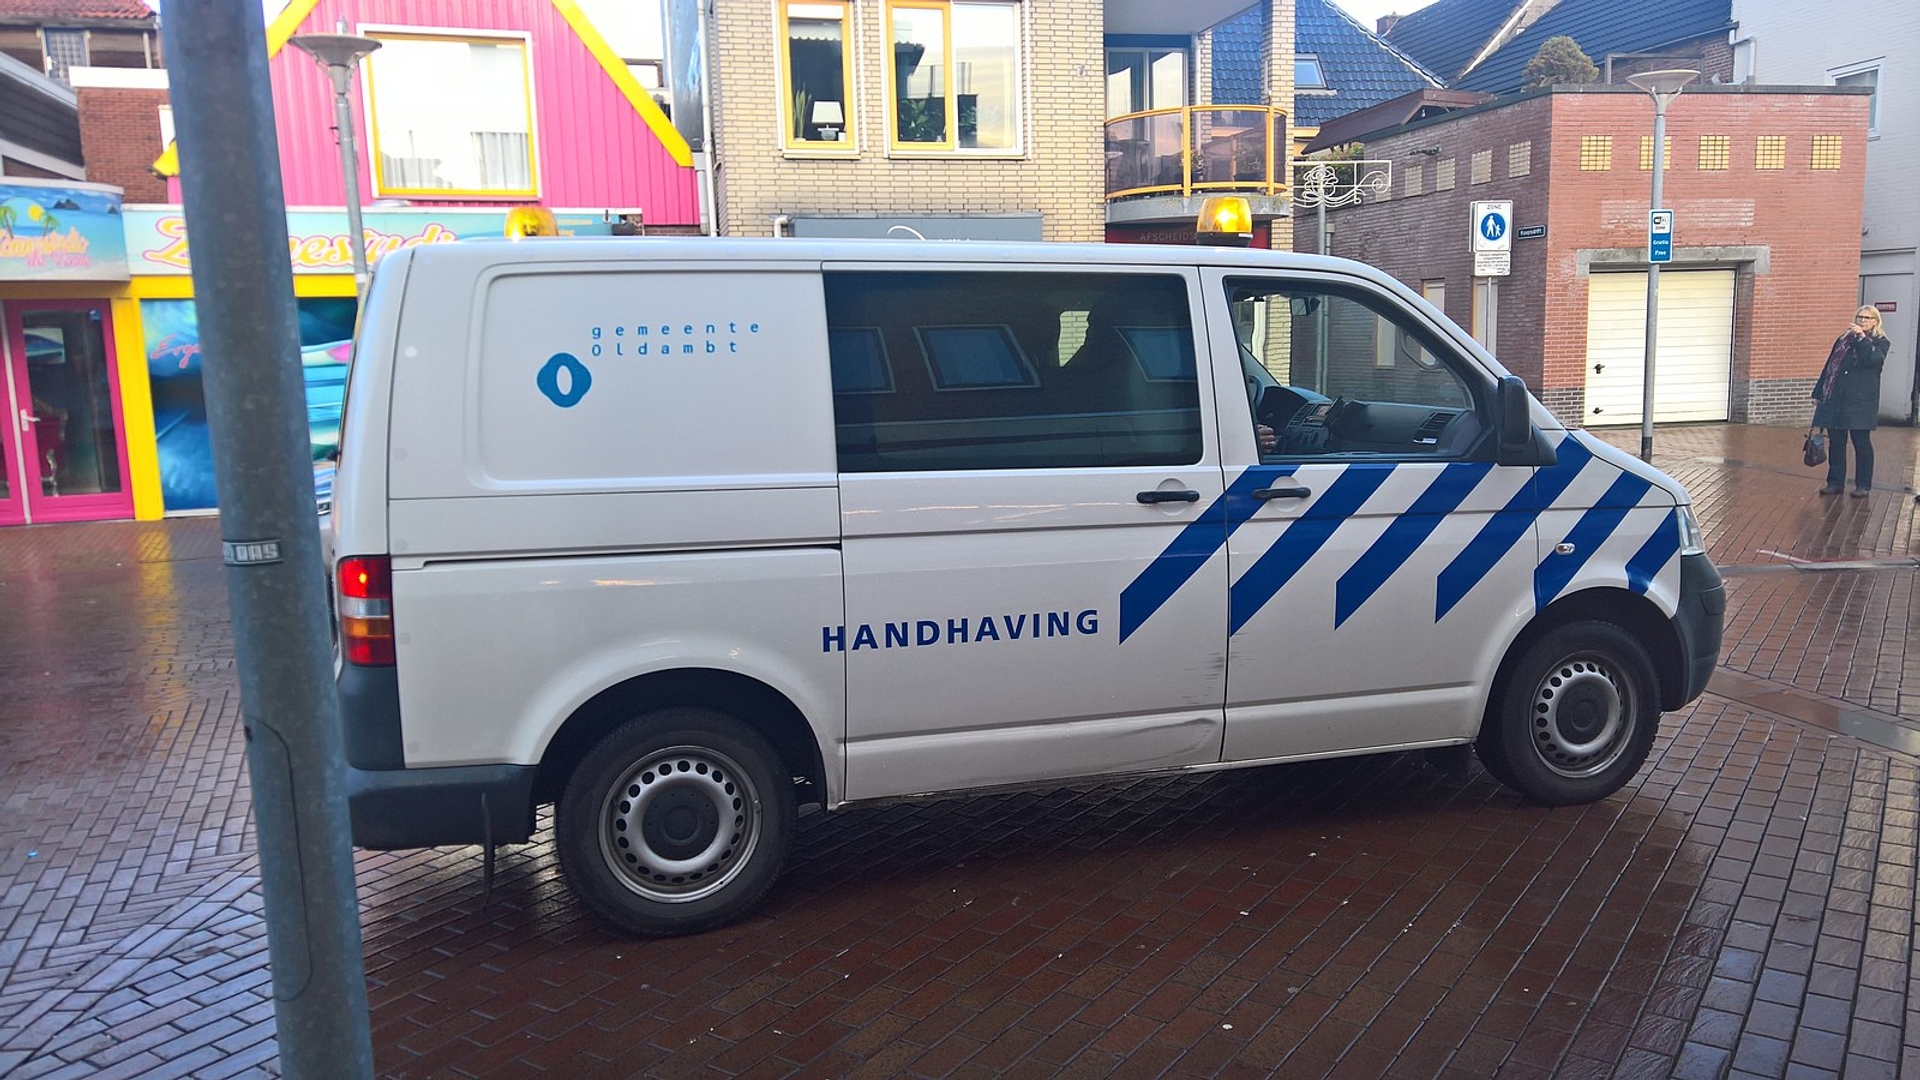 1600px-Handhaving_van_of_the_municipality_of_Oldambt,_Winschoten_(2017)